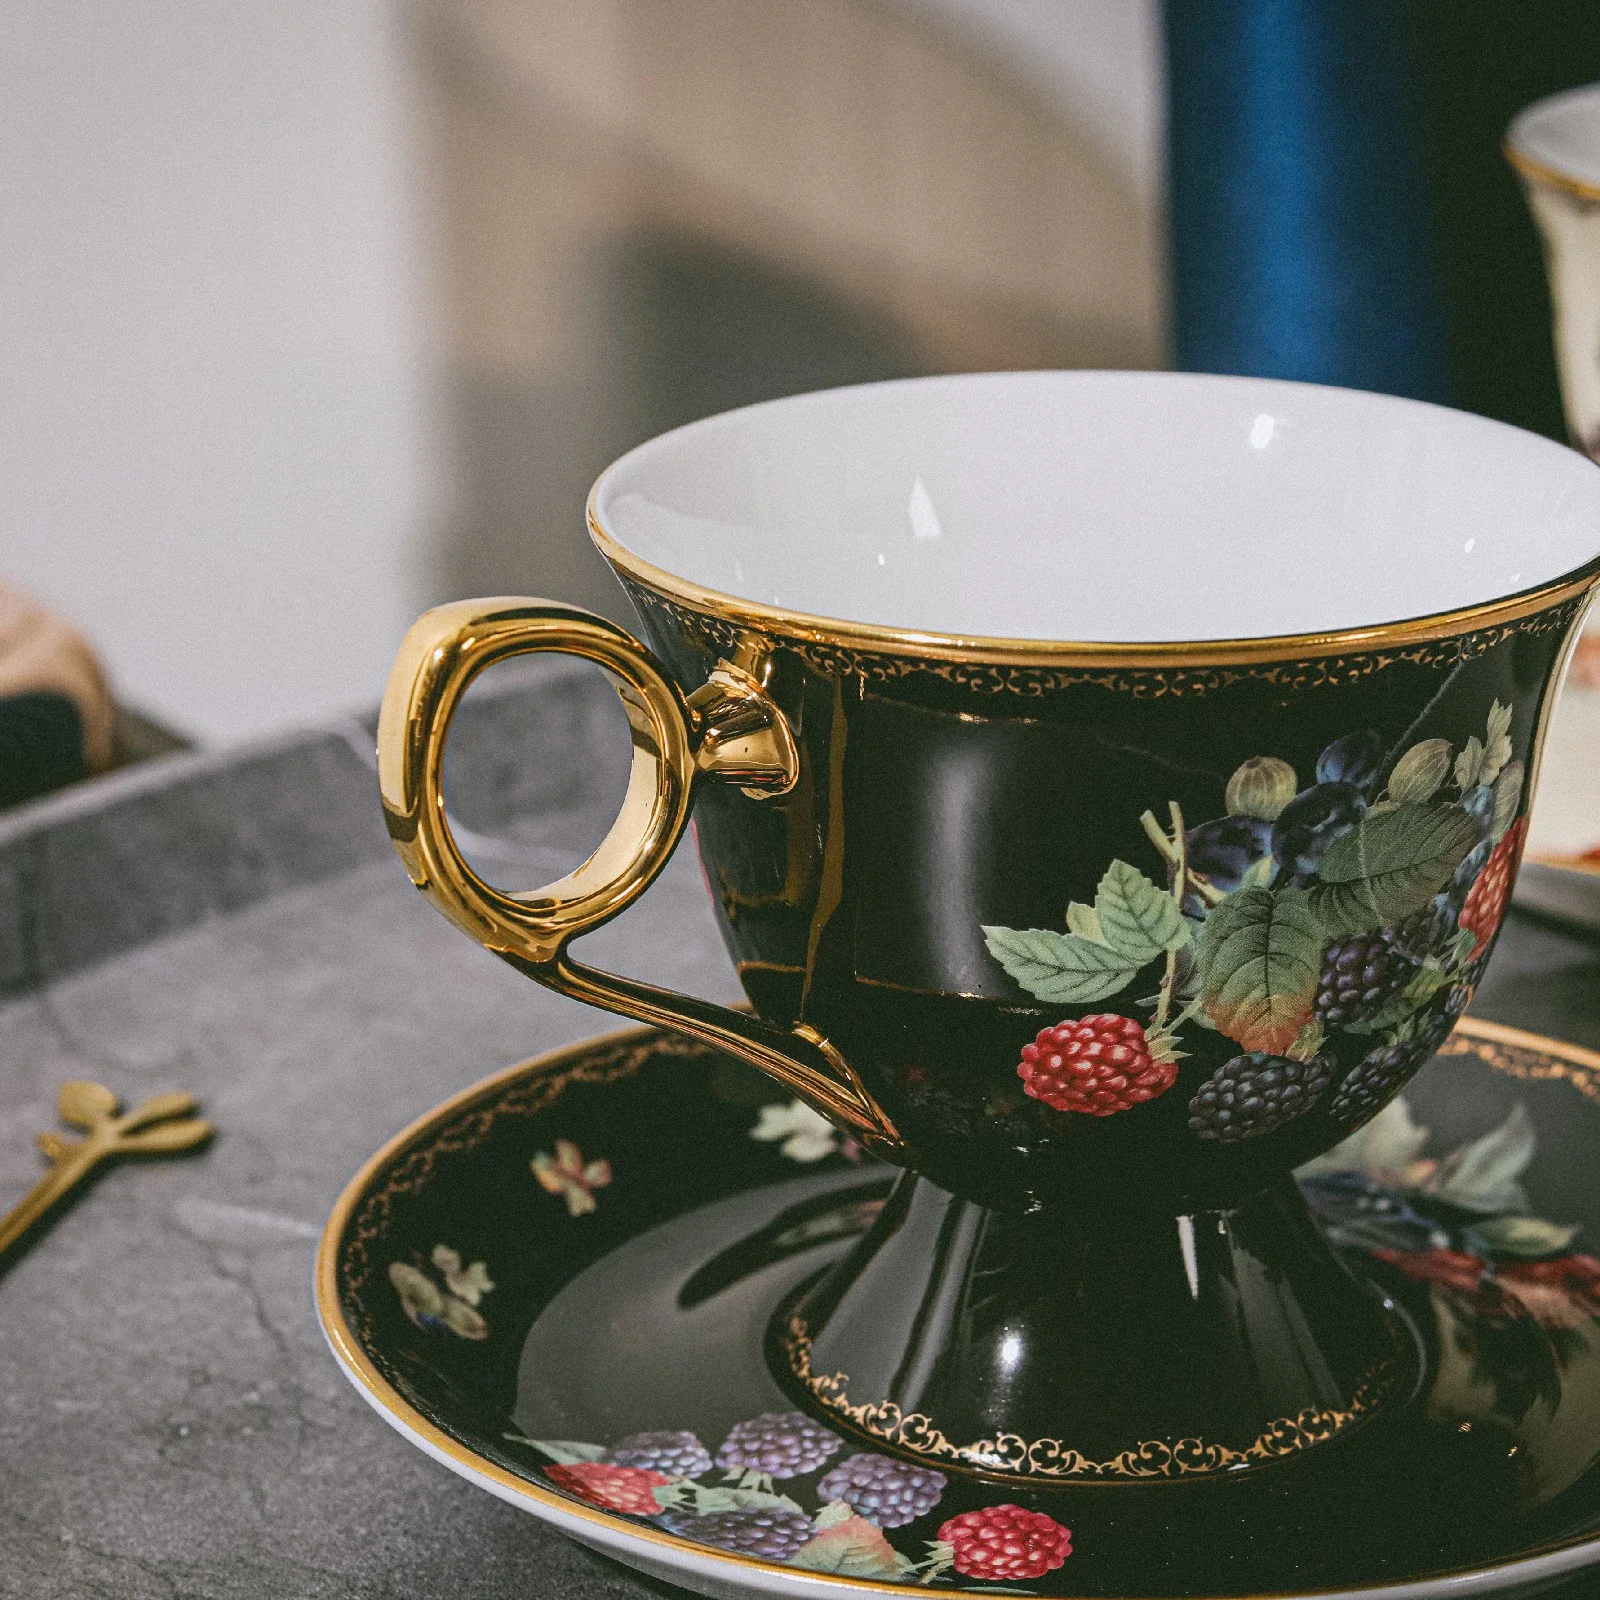 

Европейская кофейная чашка Isabella с высокими штанинами и золотым покрытием в стиле ретро, роскошная кофейная чашка, набор стандартных чашек